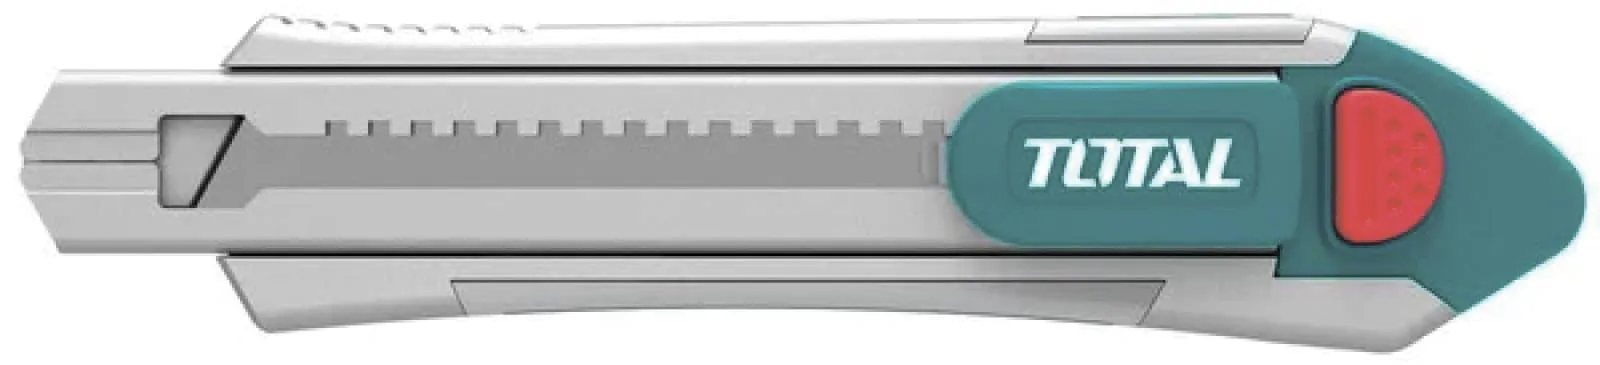 Нож с выдвижным лезвием с алюминиевым корпусом Total TG5121806